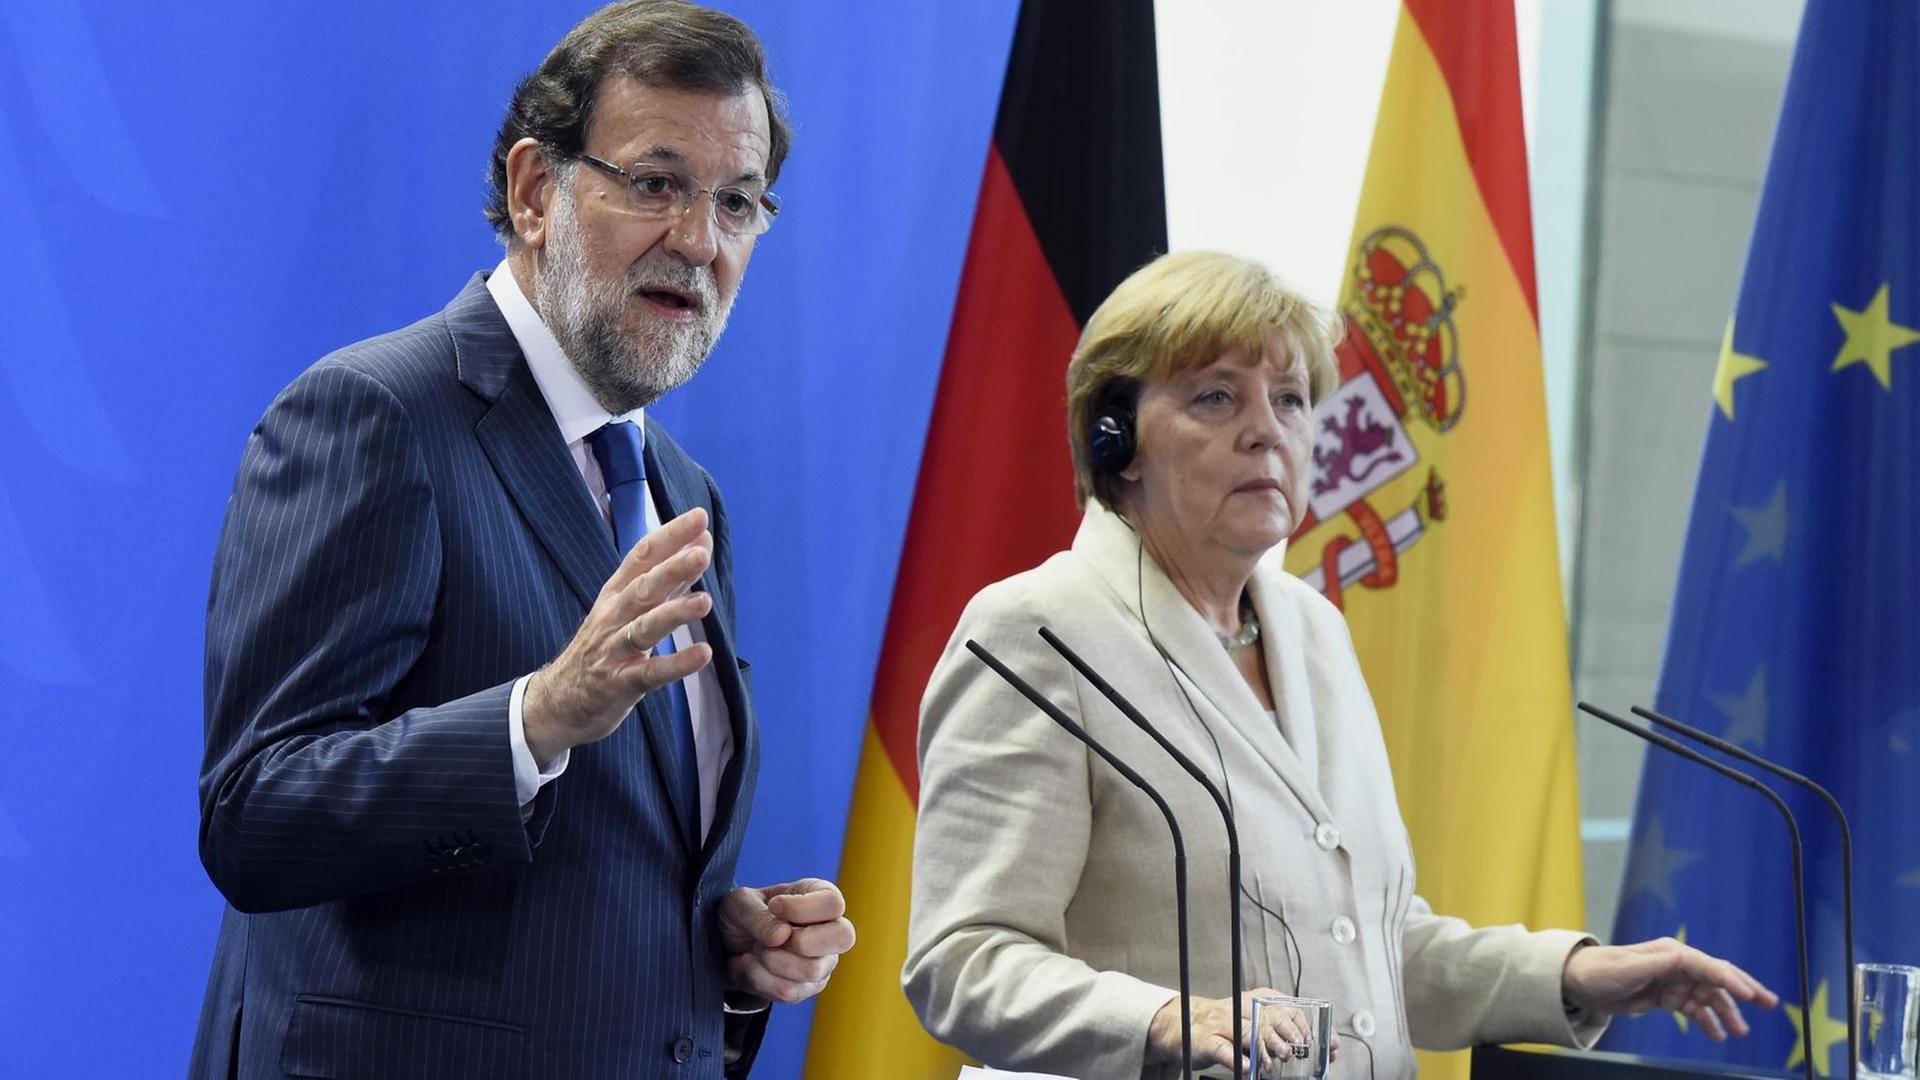 Bundeskanzlerin Merkel und der spanische Ministerpräsident Rajoy bei einer Pressekonferenz in Berlin.